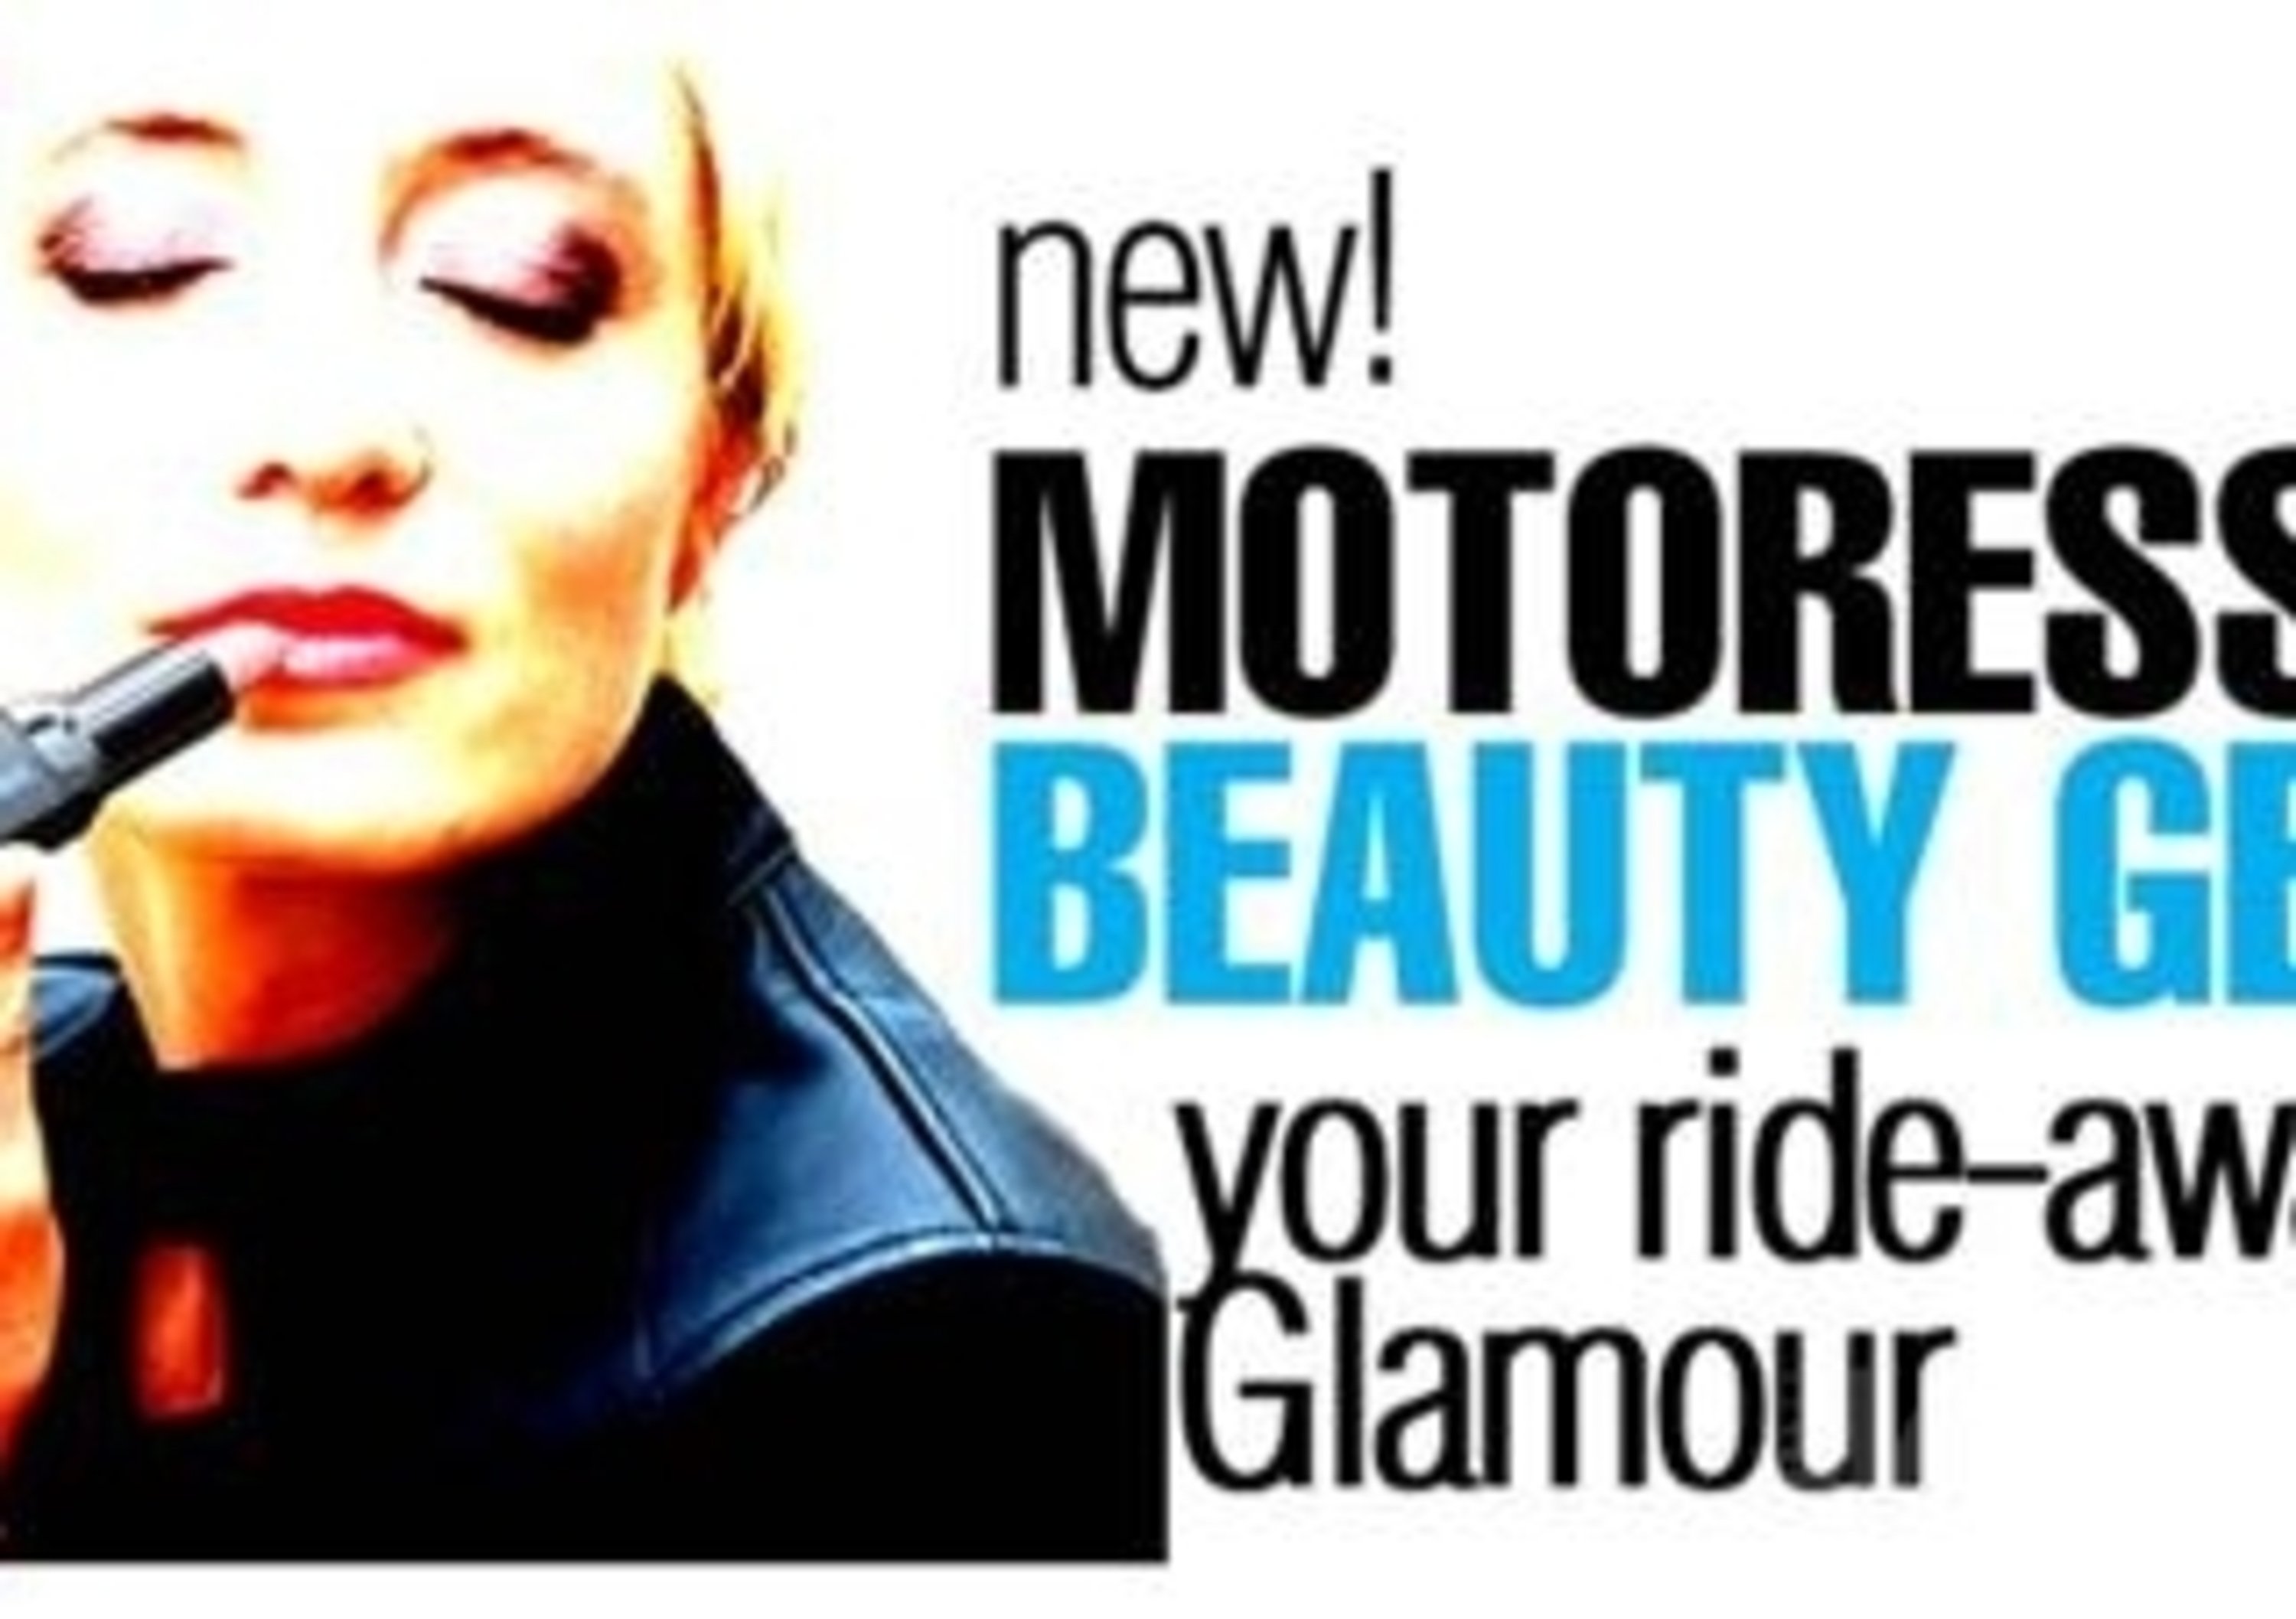 Motoress Beauty Gear, beauty line per motocicliste